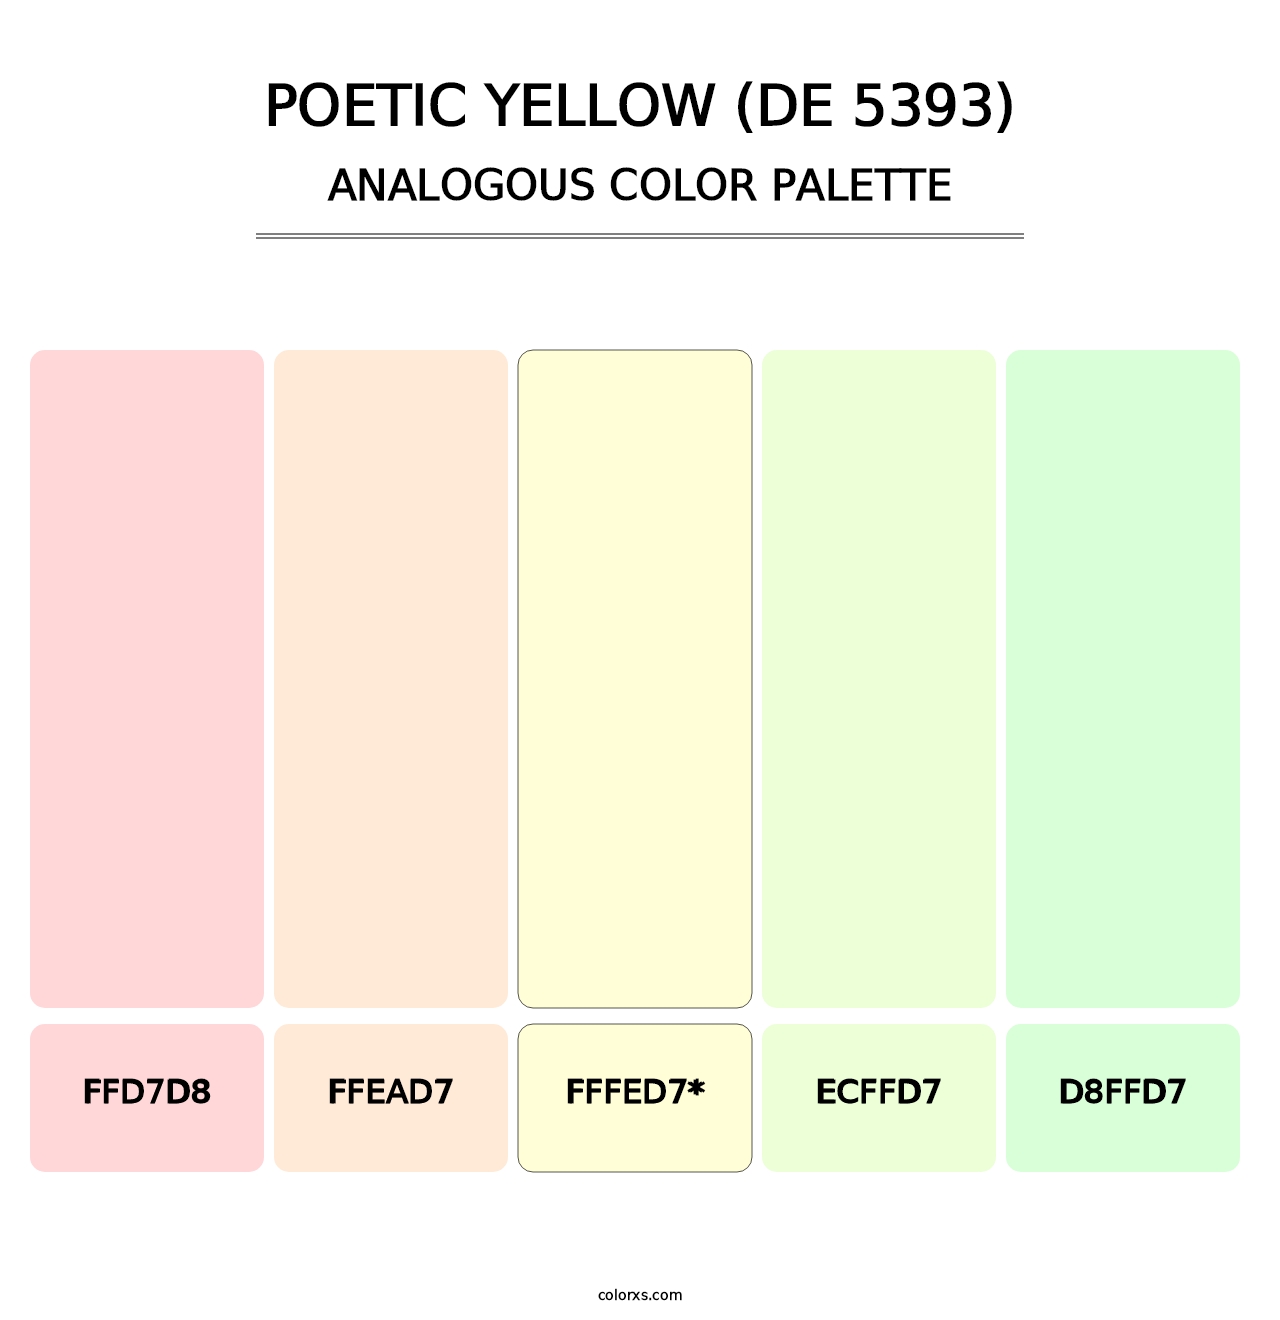 Poetic Yellow (DE 5393) - Analogous Color Palette